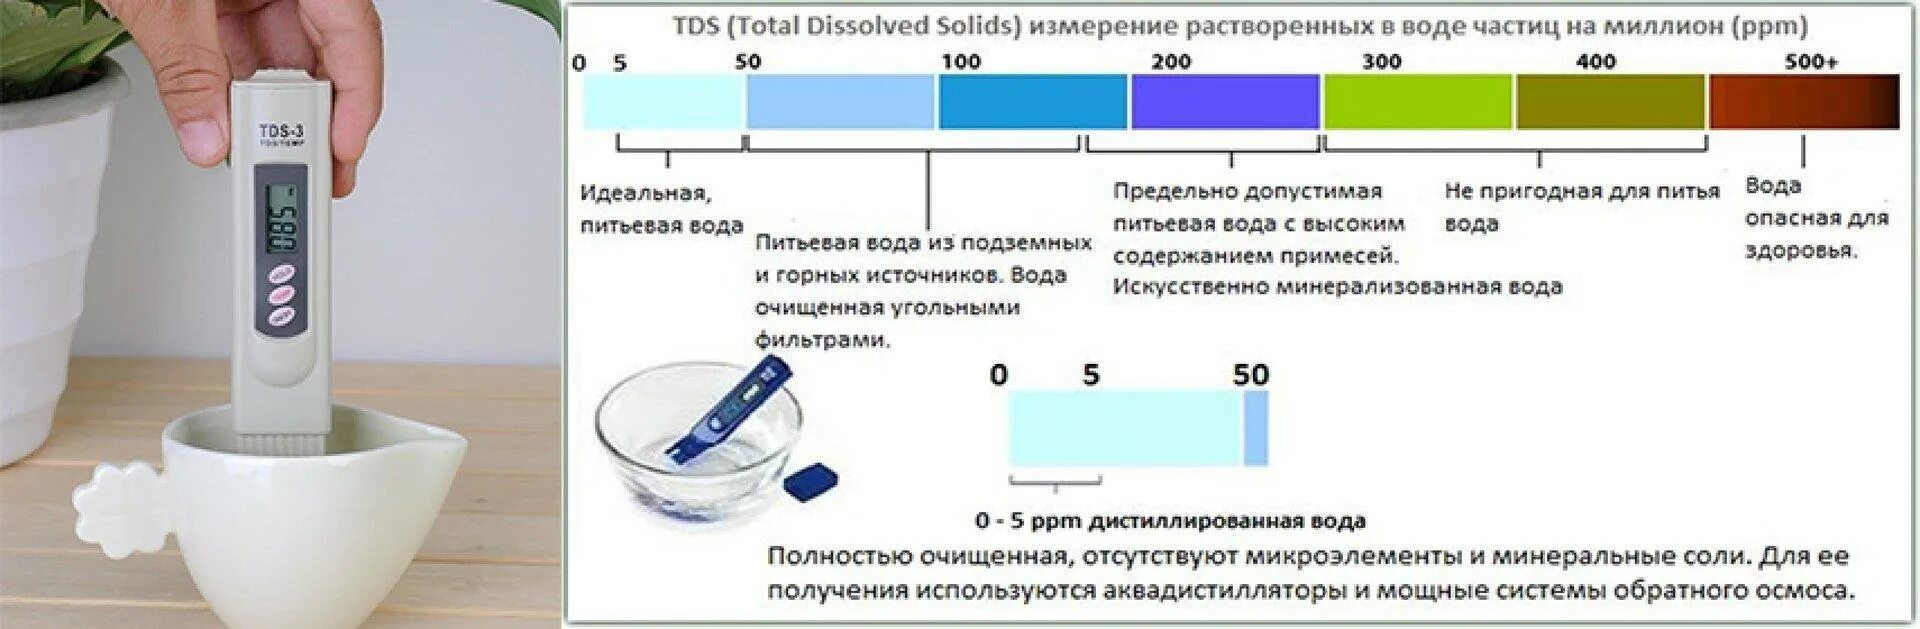 Рн соляного раствора. TDS метр для воды таблица 3 ТДС солемер. TDS 3 ТДС метр солемер анализатор качества питьевой воды. TDS 3 ТДС метр солемер анализатор качества питьевой воды таблица. ТДС 3 тестер воды таблица.